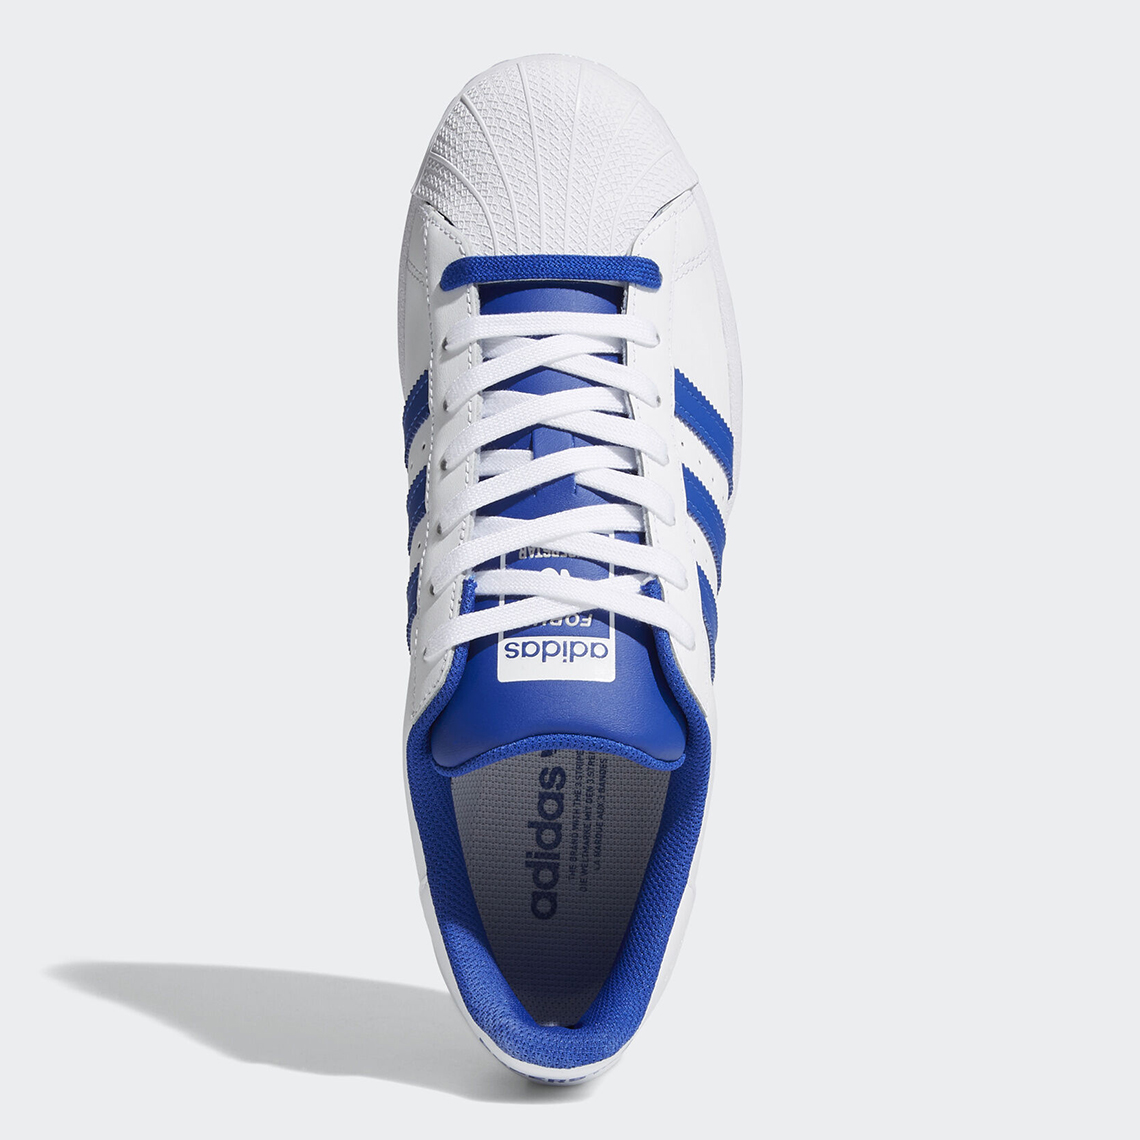 Adidas Superstar Forum White Blue Fv8272 2